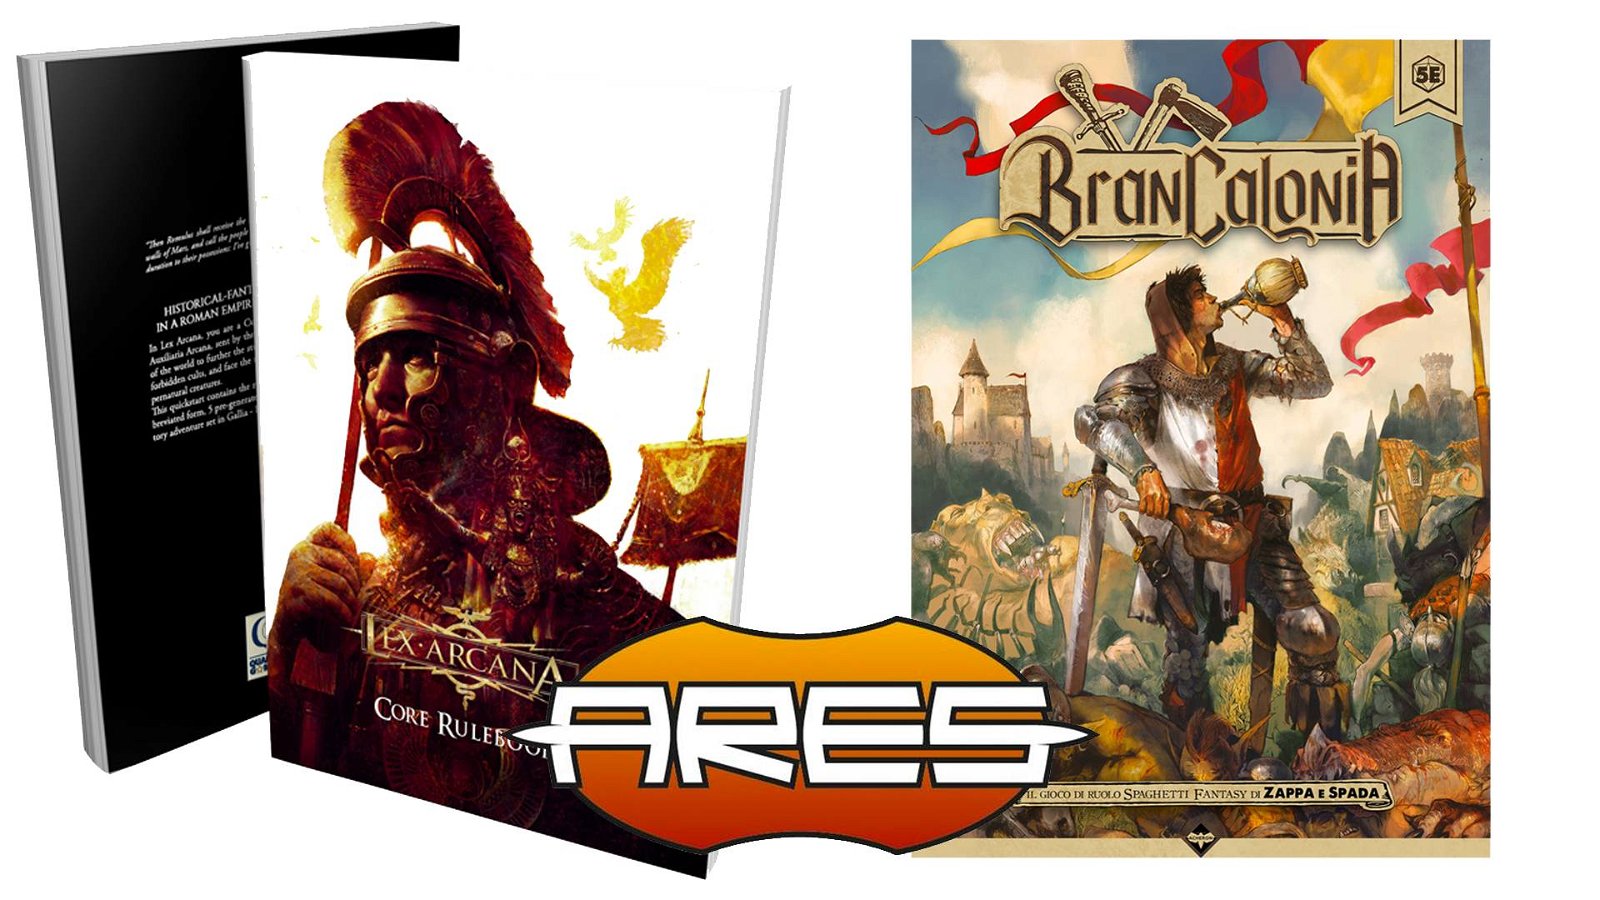 Immagine di Ares Games distribuirà Lex Arcana e Brancalonia negli USA